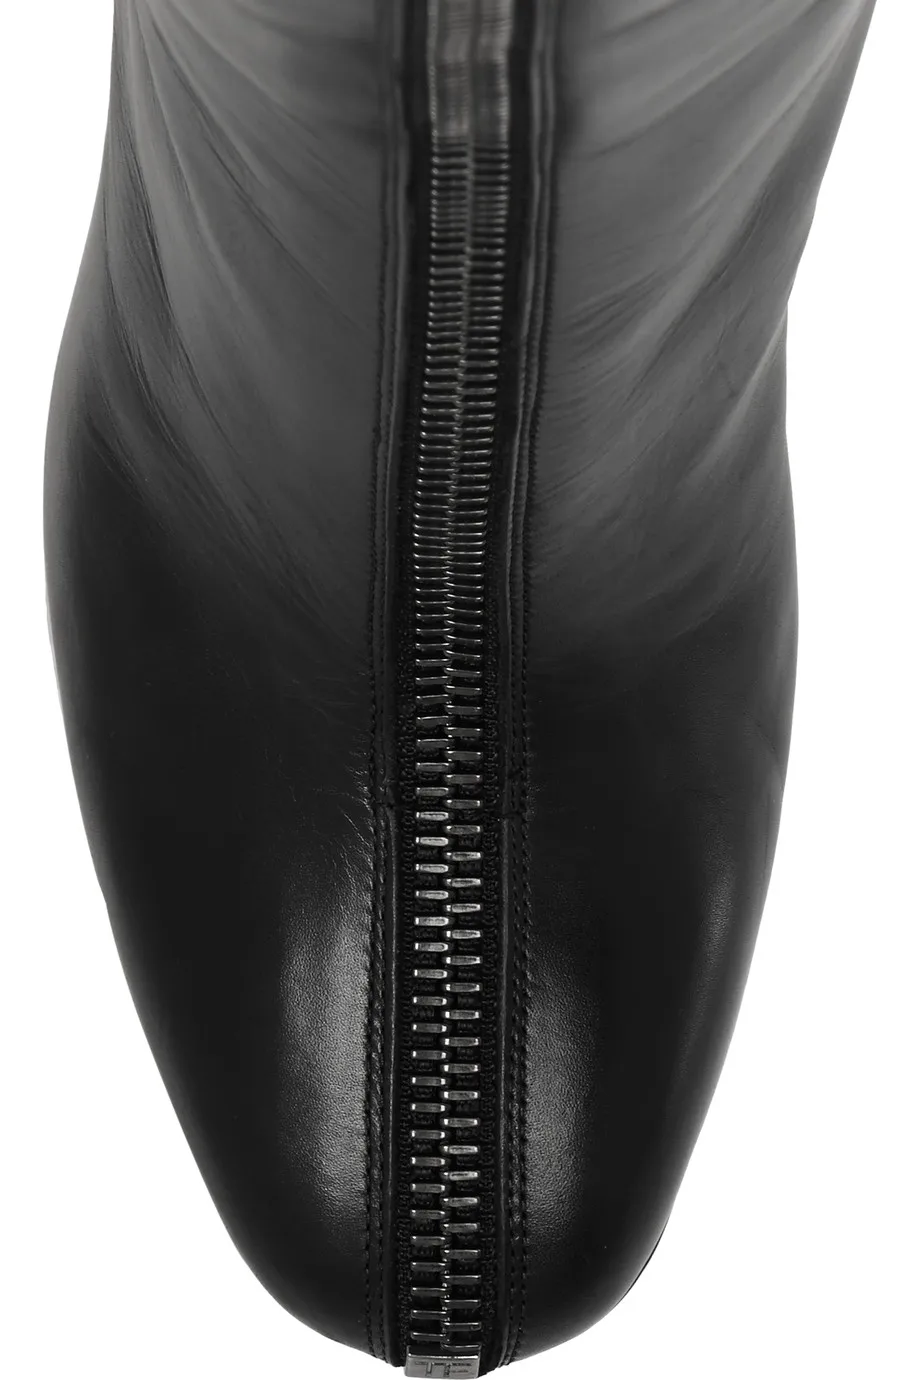 Женские ботинки; сапоги до колена из натуральной кожи с круглым носком; женская обувь на не сужающемся книзу массивном каблуке с молнией спереди; цвет черный, бежевый; Aimirlly